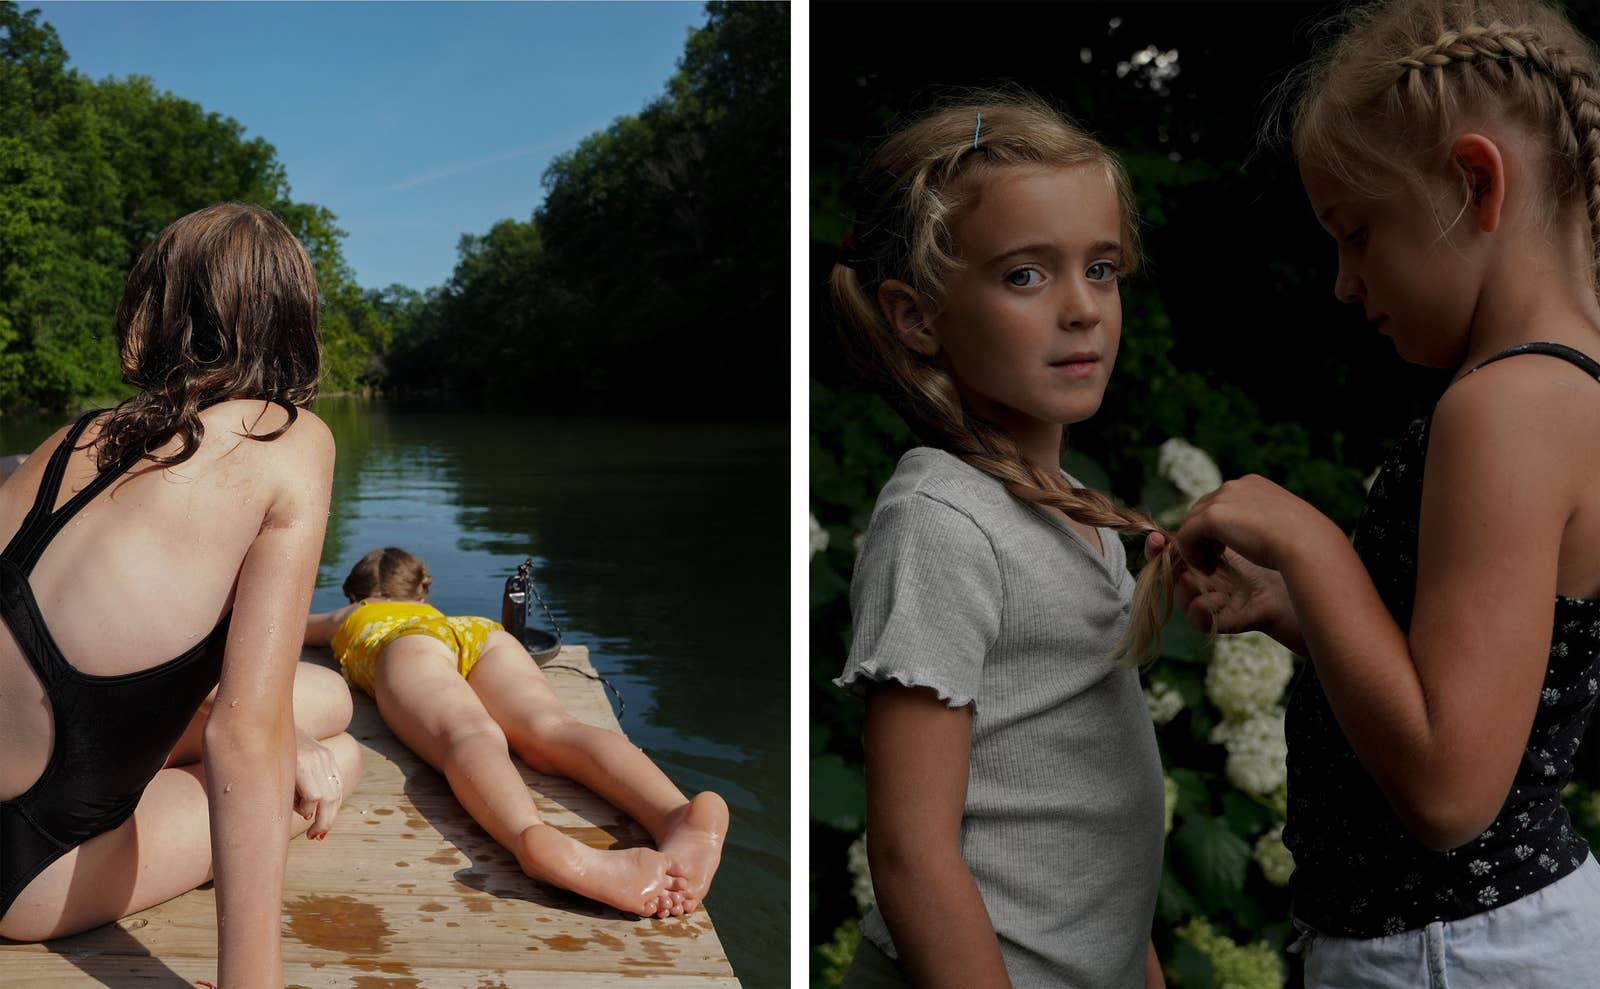 두 소녀가 호숫가에서 놀고 있고, 두 번째 사진에서 두 소녀가 서로 머리를 땋고 있습니다.